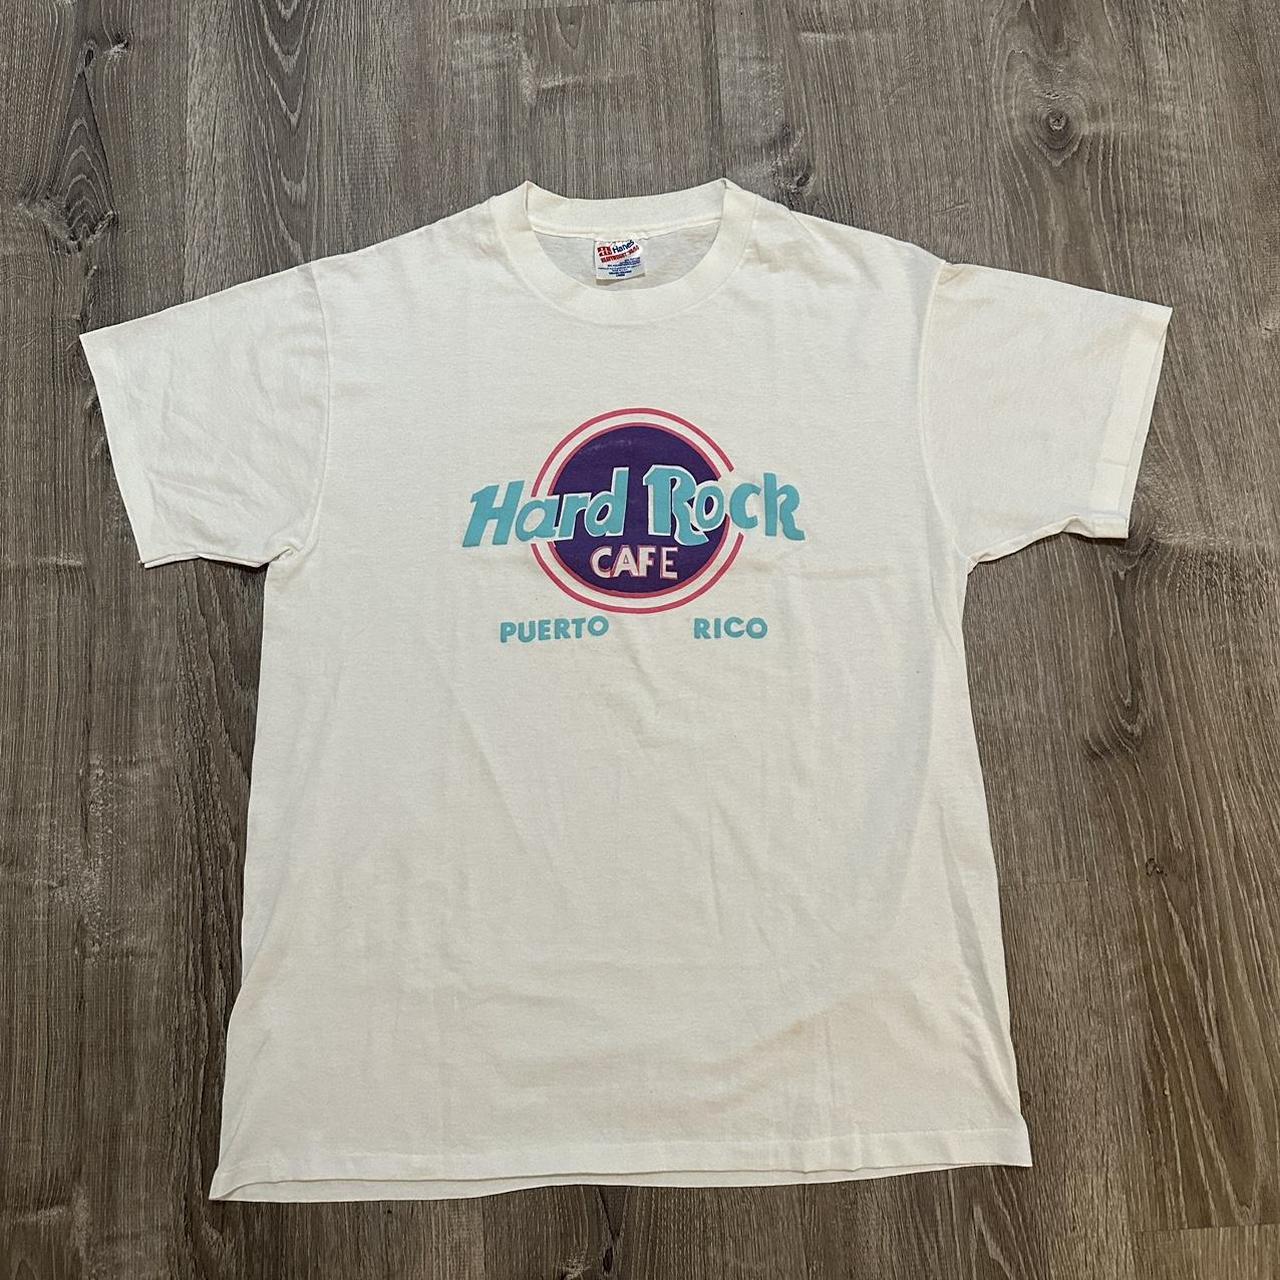 Vintage 90’s Hard Rock Cafe Puerto Rico T-shirt.... - Depop